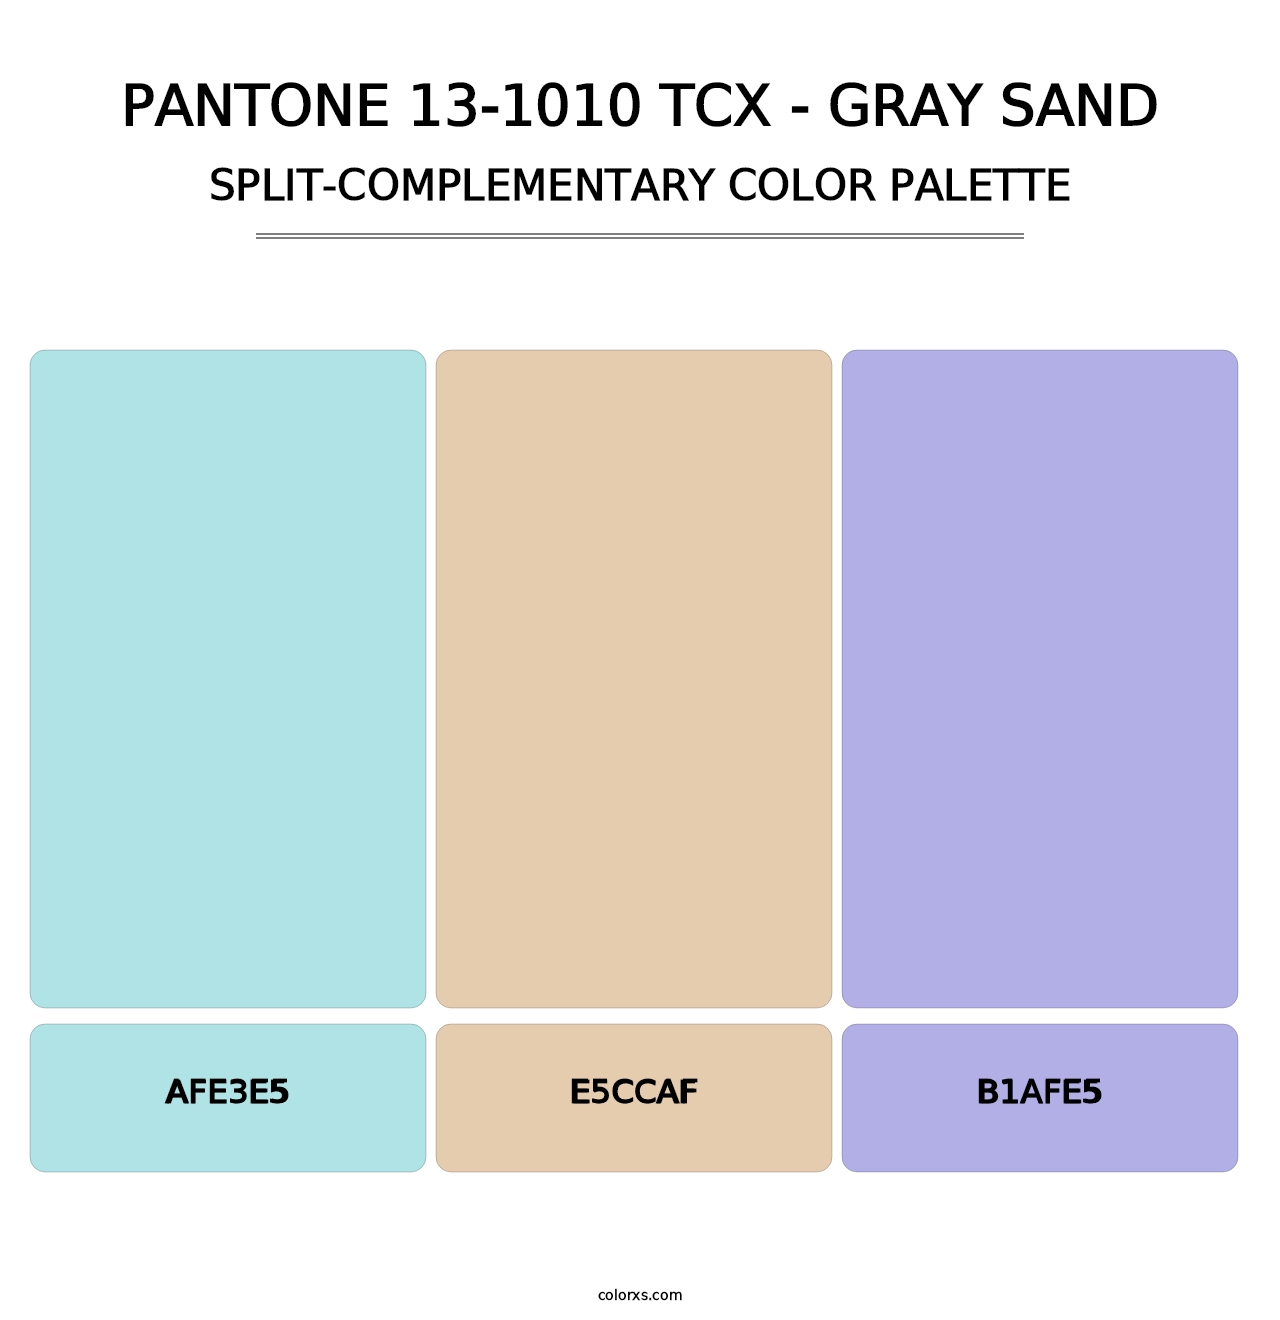 PANTONE 13-1010 TCX - Gray Sand - Split-Complementary Color Palette